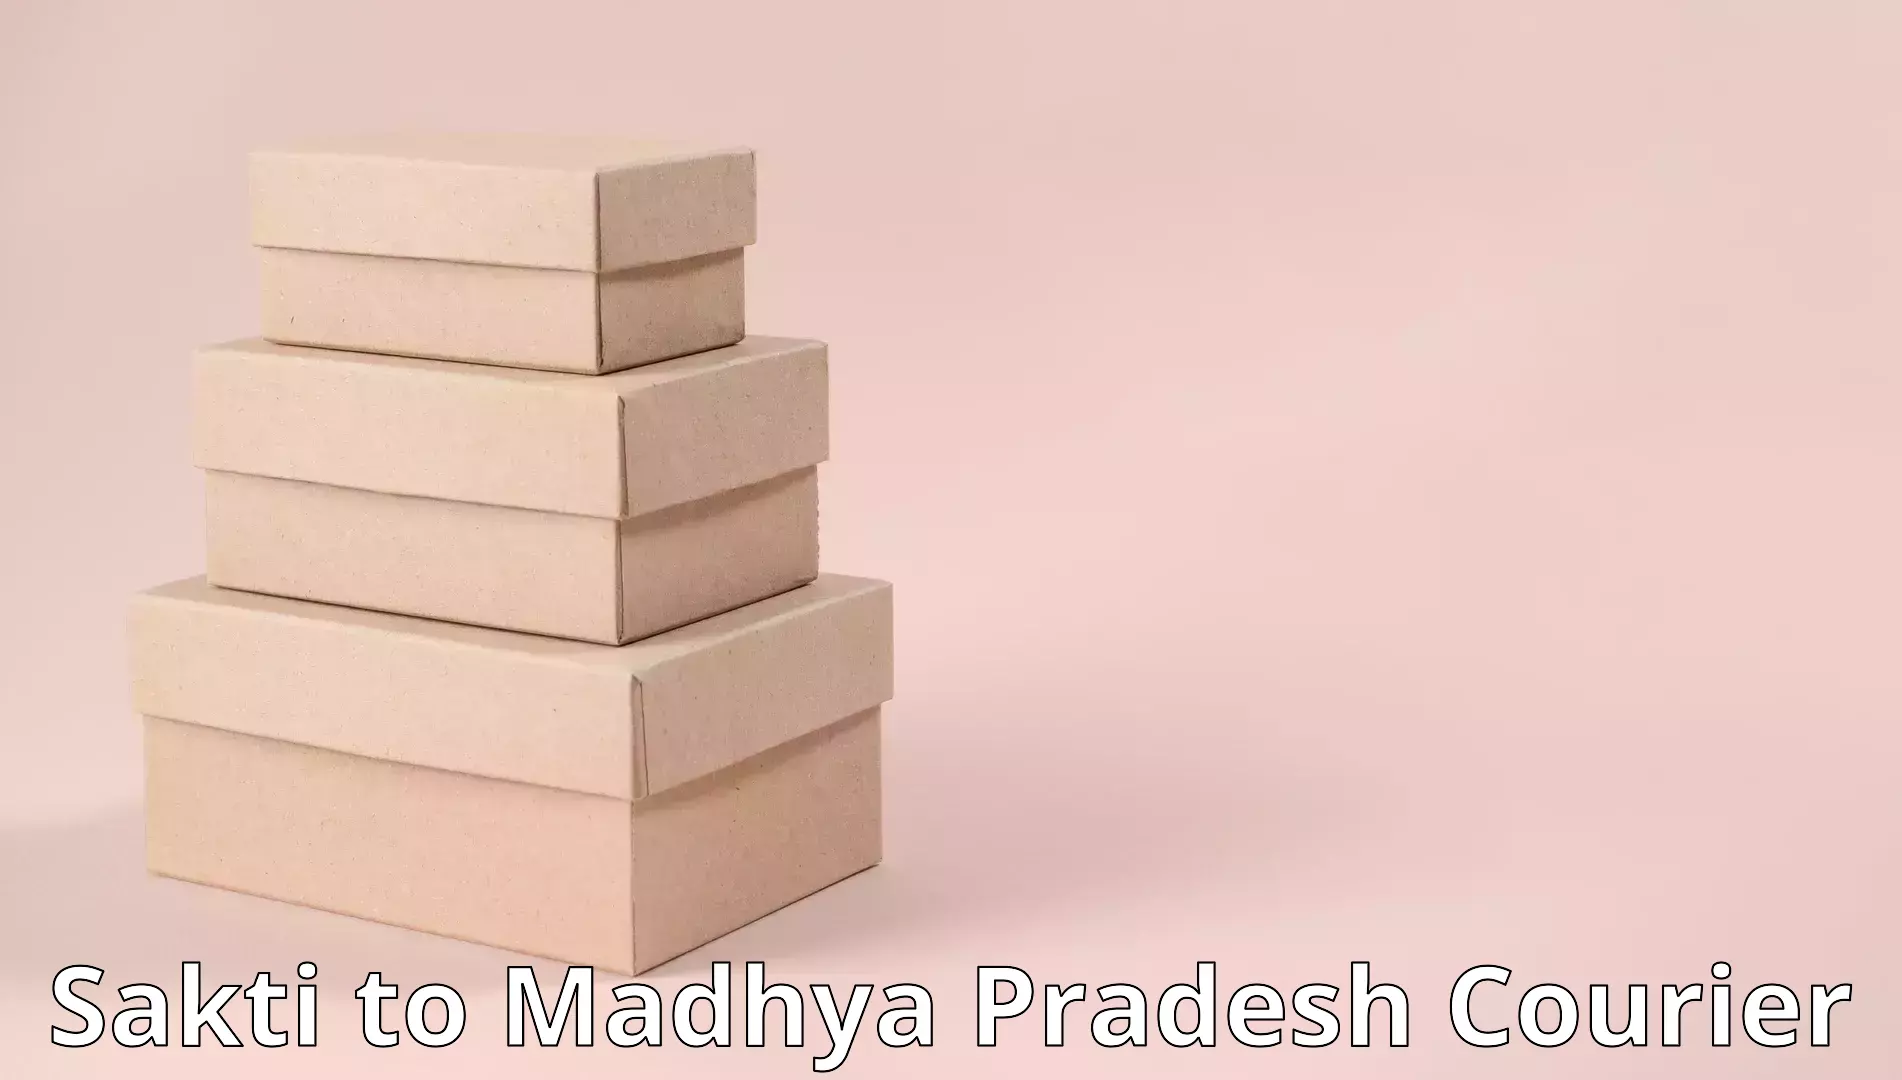 Stress-free household moving Sakti to Madhya Pradesh